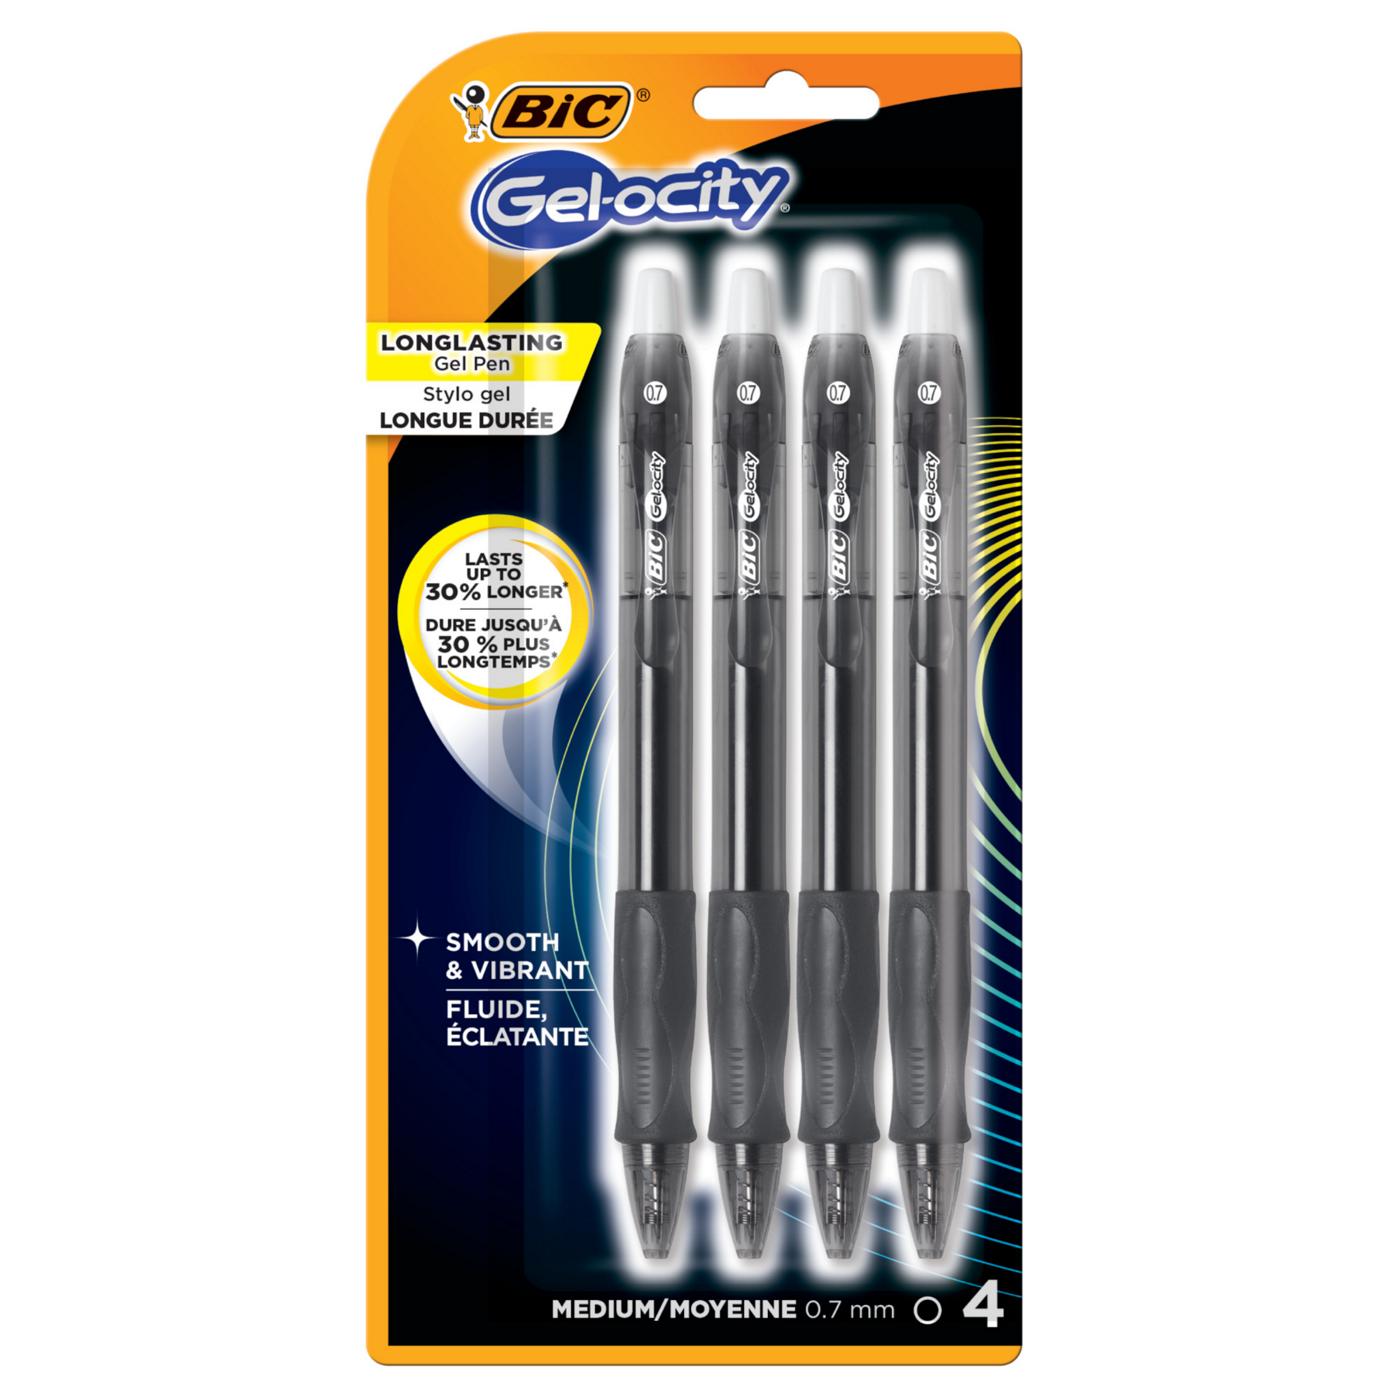 BIC Gel-ocity Retractable 0.7mm Gel Pens - Black Ink - Shop Pens at H-E-B